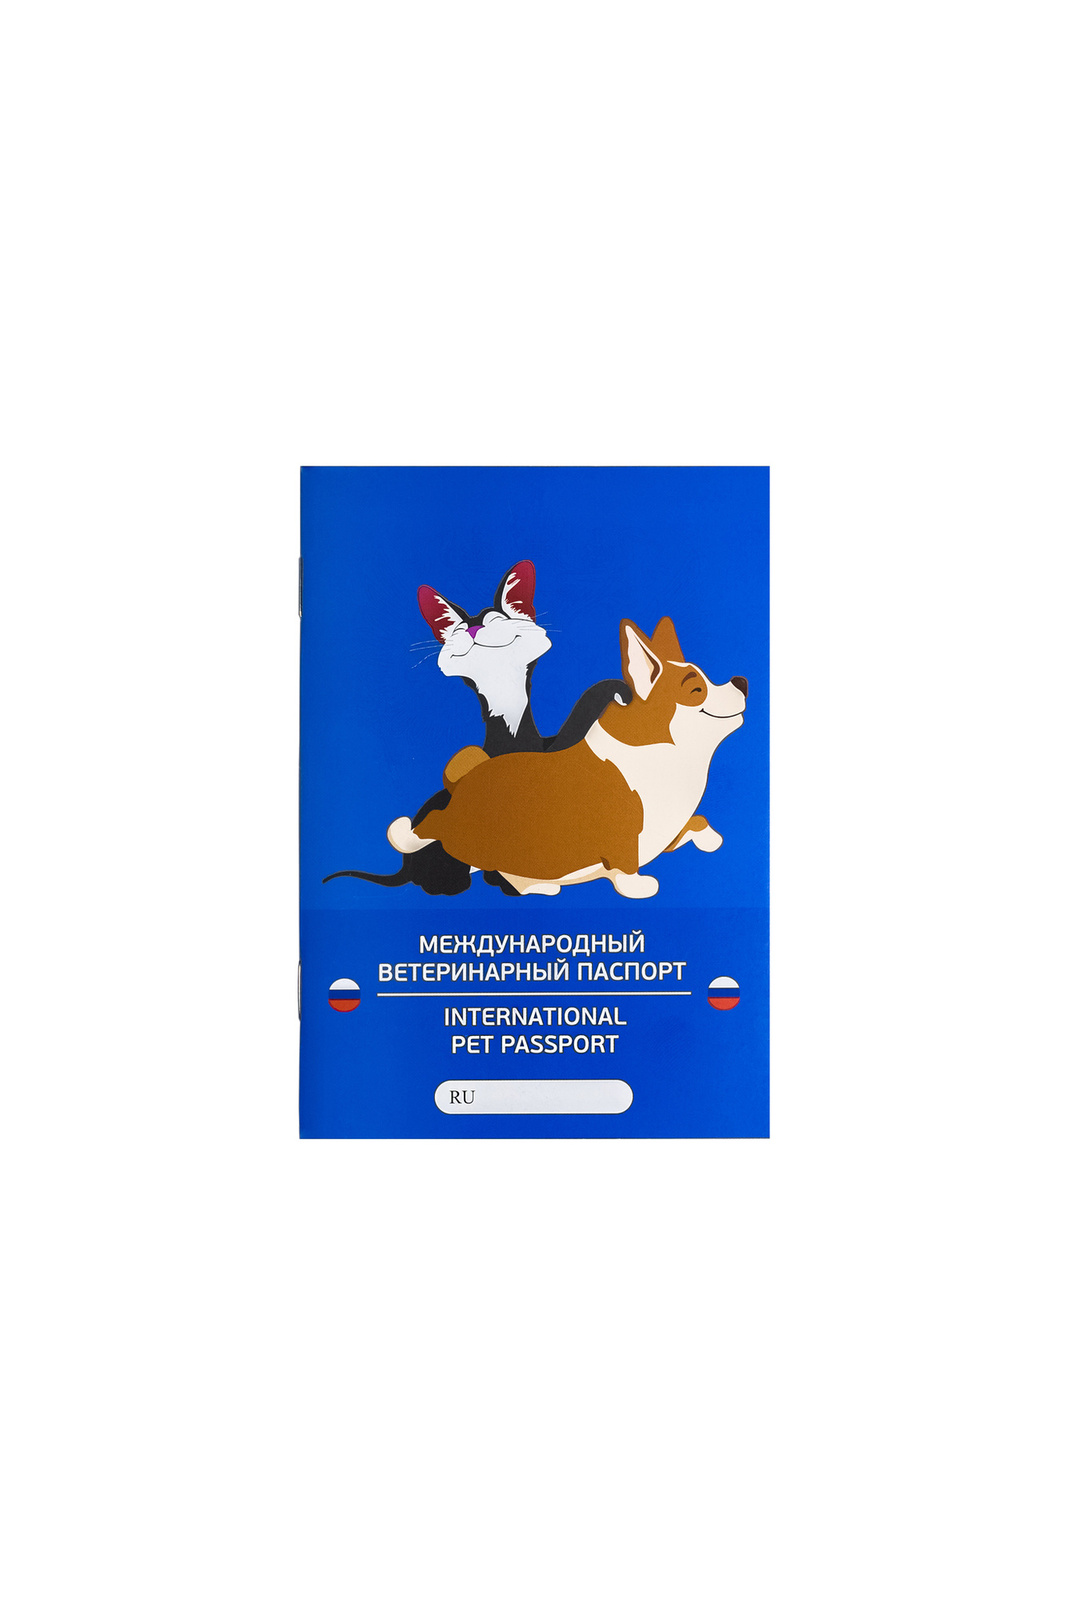 VETЗАБОТА VETЗАБОТА паспорт ветеринарный А6, 28 листов, обложка с ламинацией матовой (10 г) международный ветеринарный паспорт vitavet для кошек 1шт